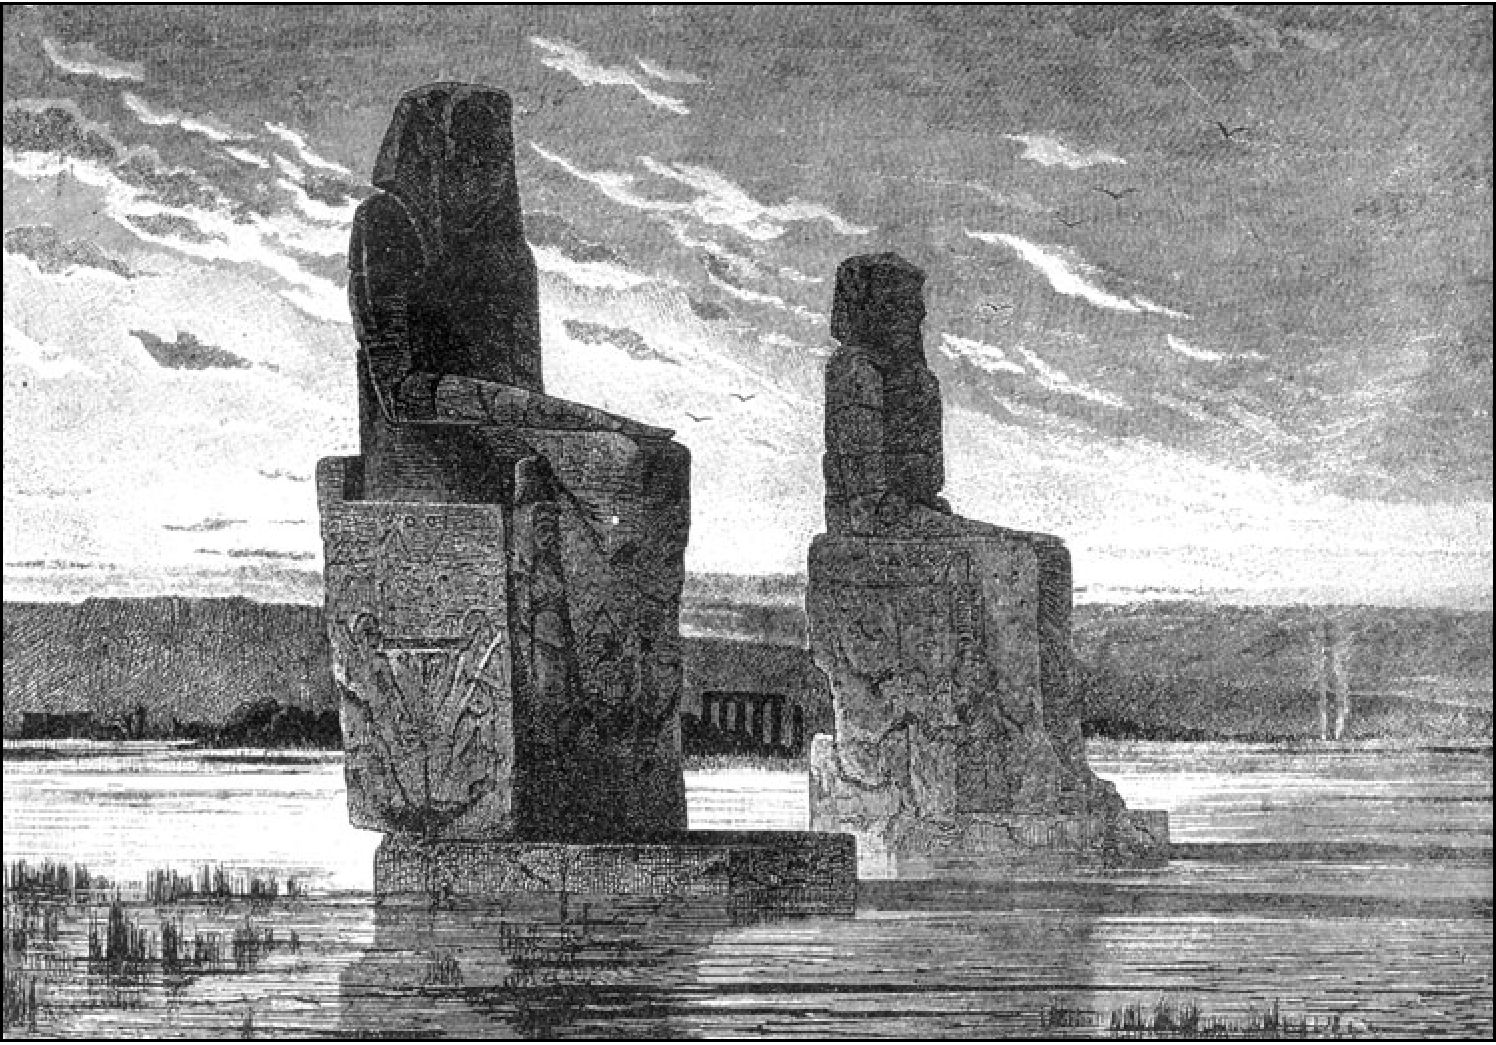 Колоссы на фиванской равнине во время половодья, ориентированные на восход солнца в зимнее солнцестояние (монолитные изваяния Аменхотепа III высотой 18 м)